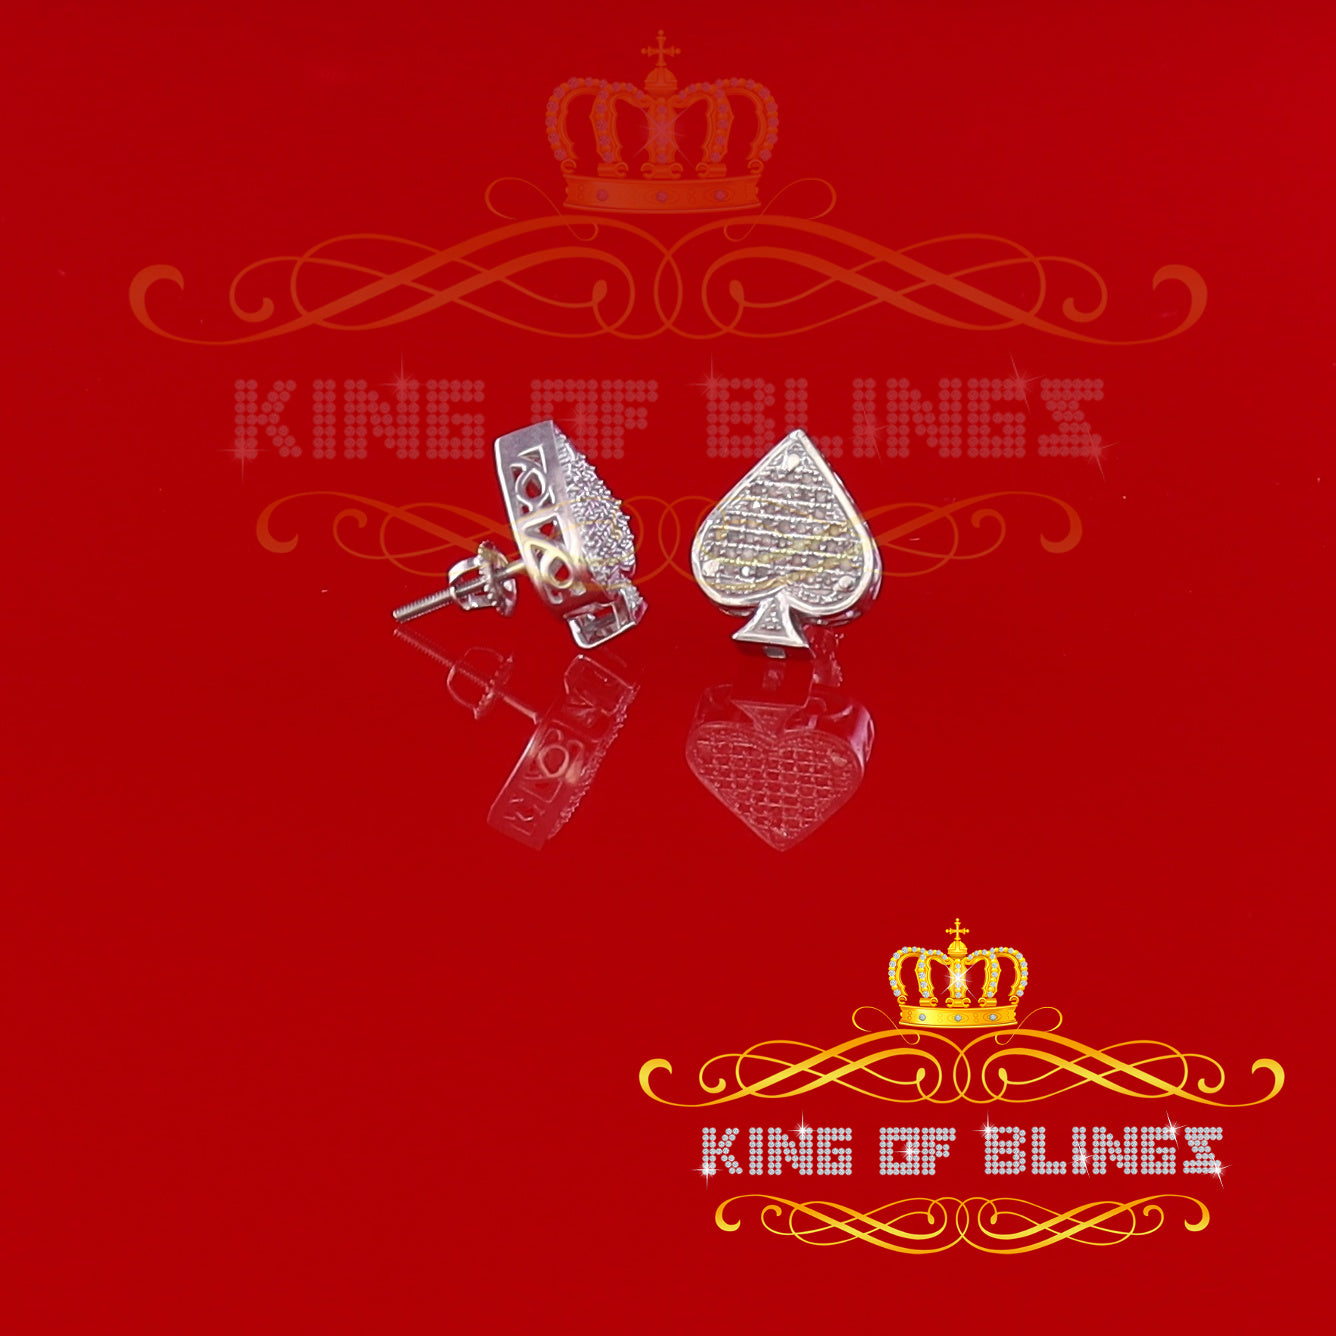 King Of Bling's 925 Sterling Silver White 0.20ct Diamond For Women's / Men's Stud Heart Earring KING OF BLINGS